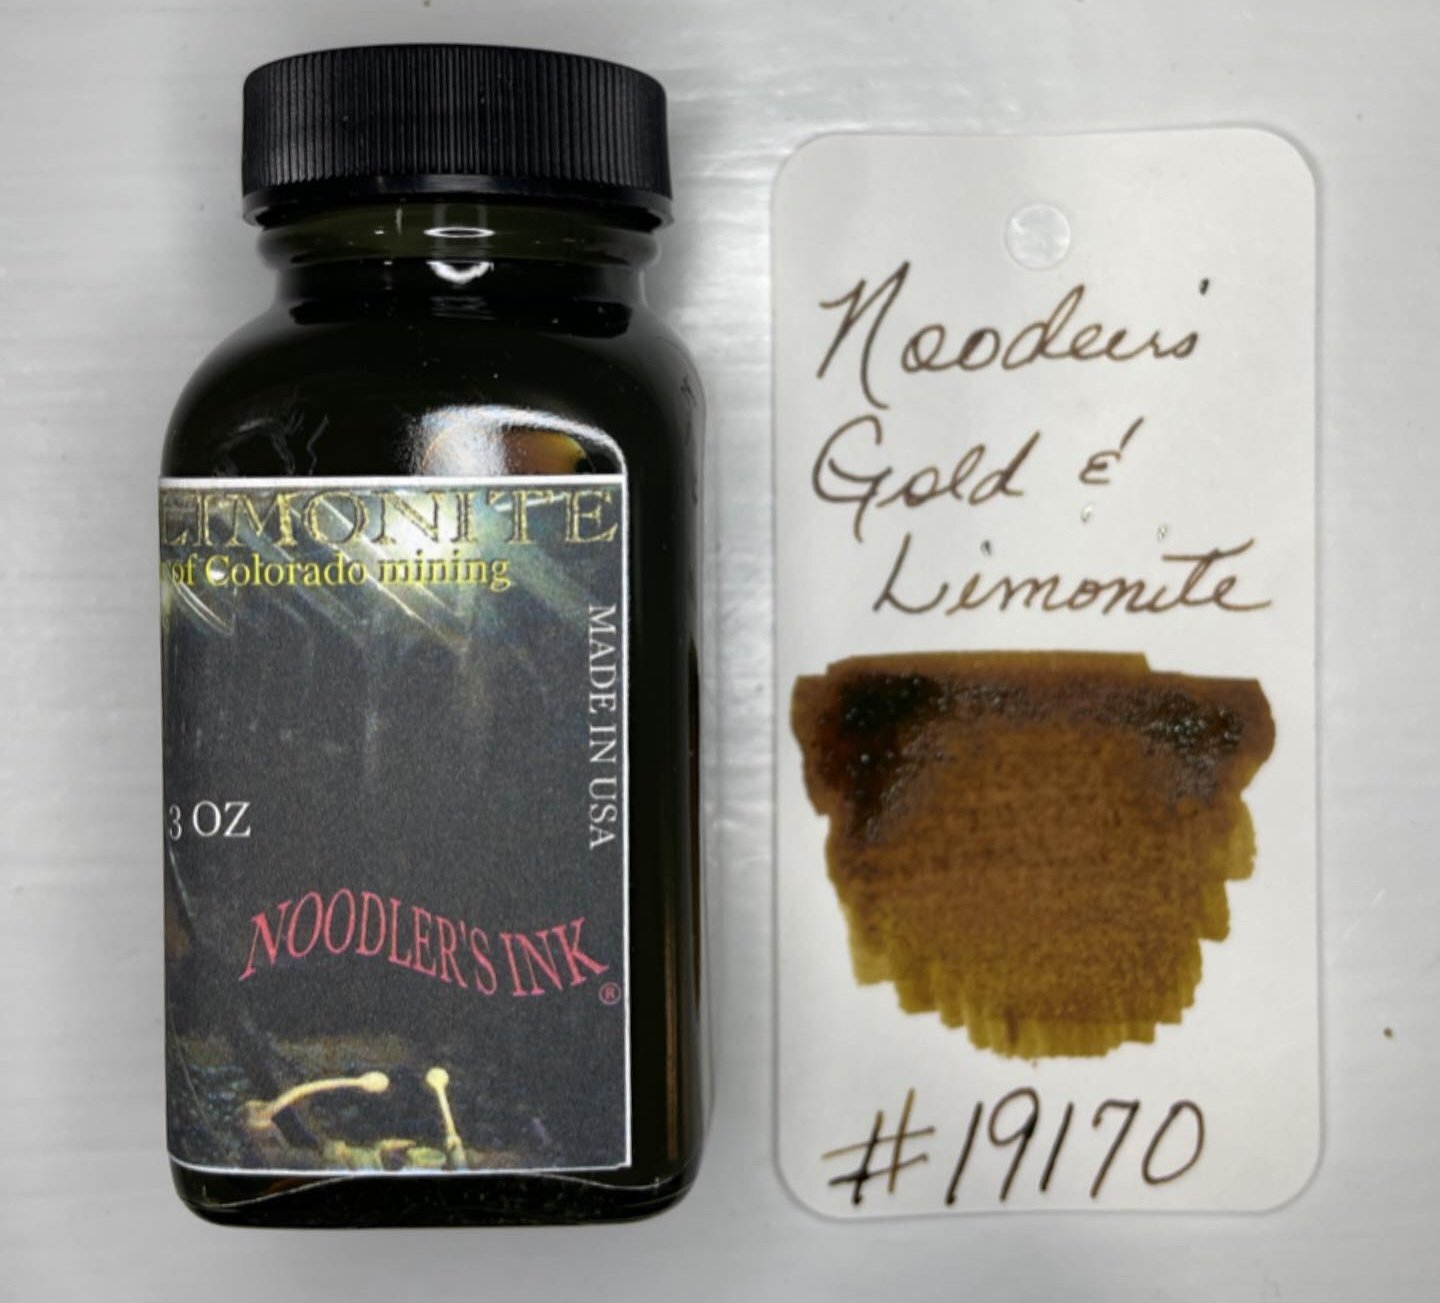 Noodler's Gold & Limonite (3oz) Bottled Ink - Denver Pen Show